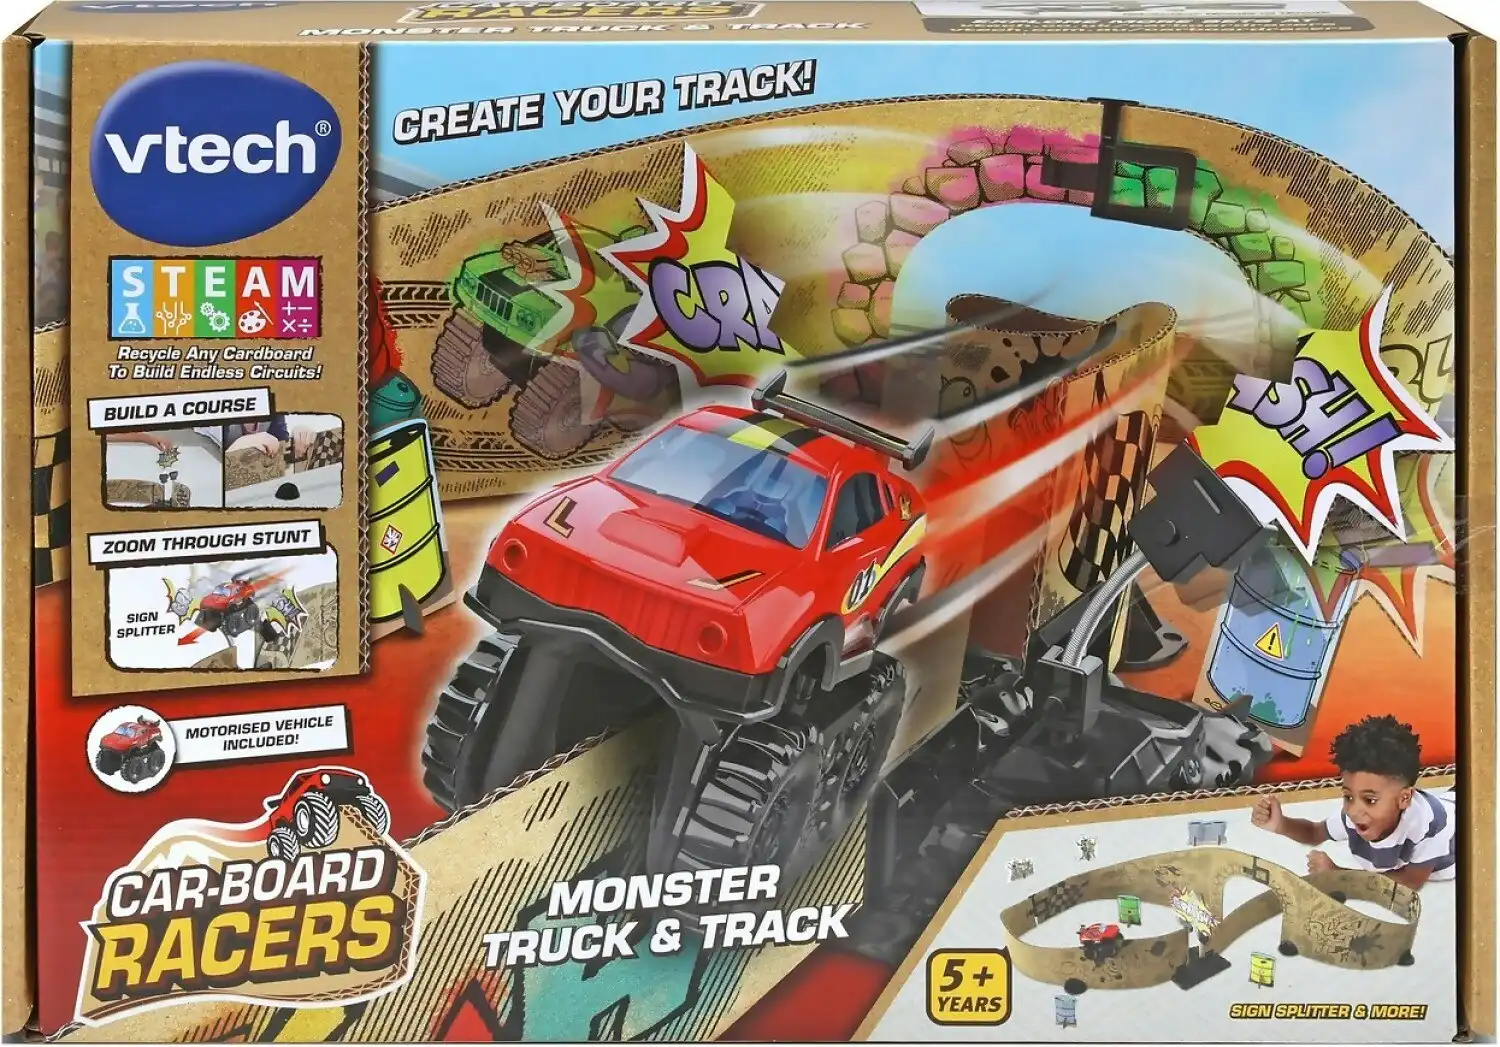 VTech - Car-board Racers Monster Truck & Track